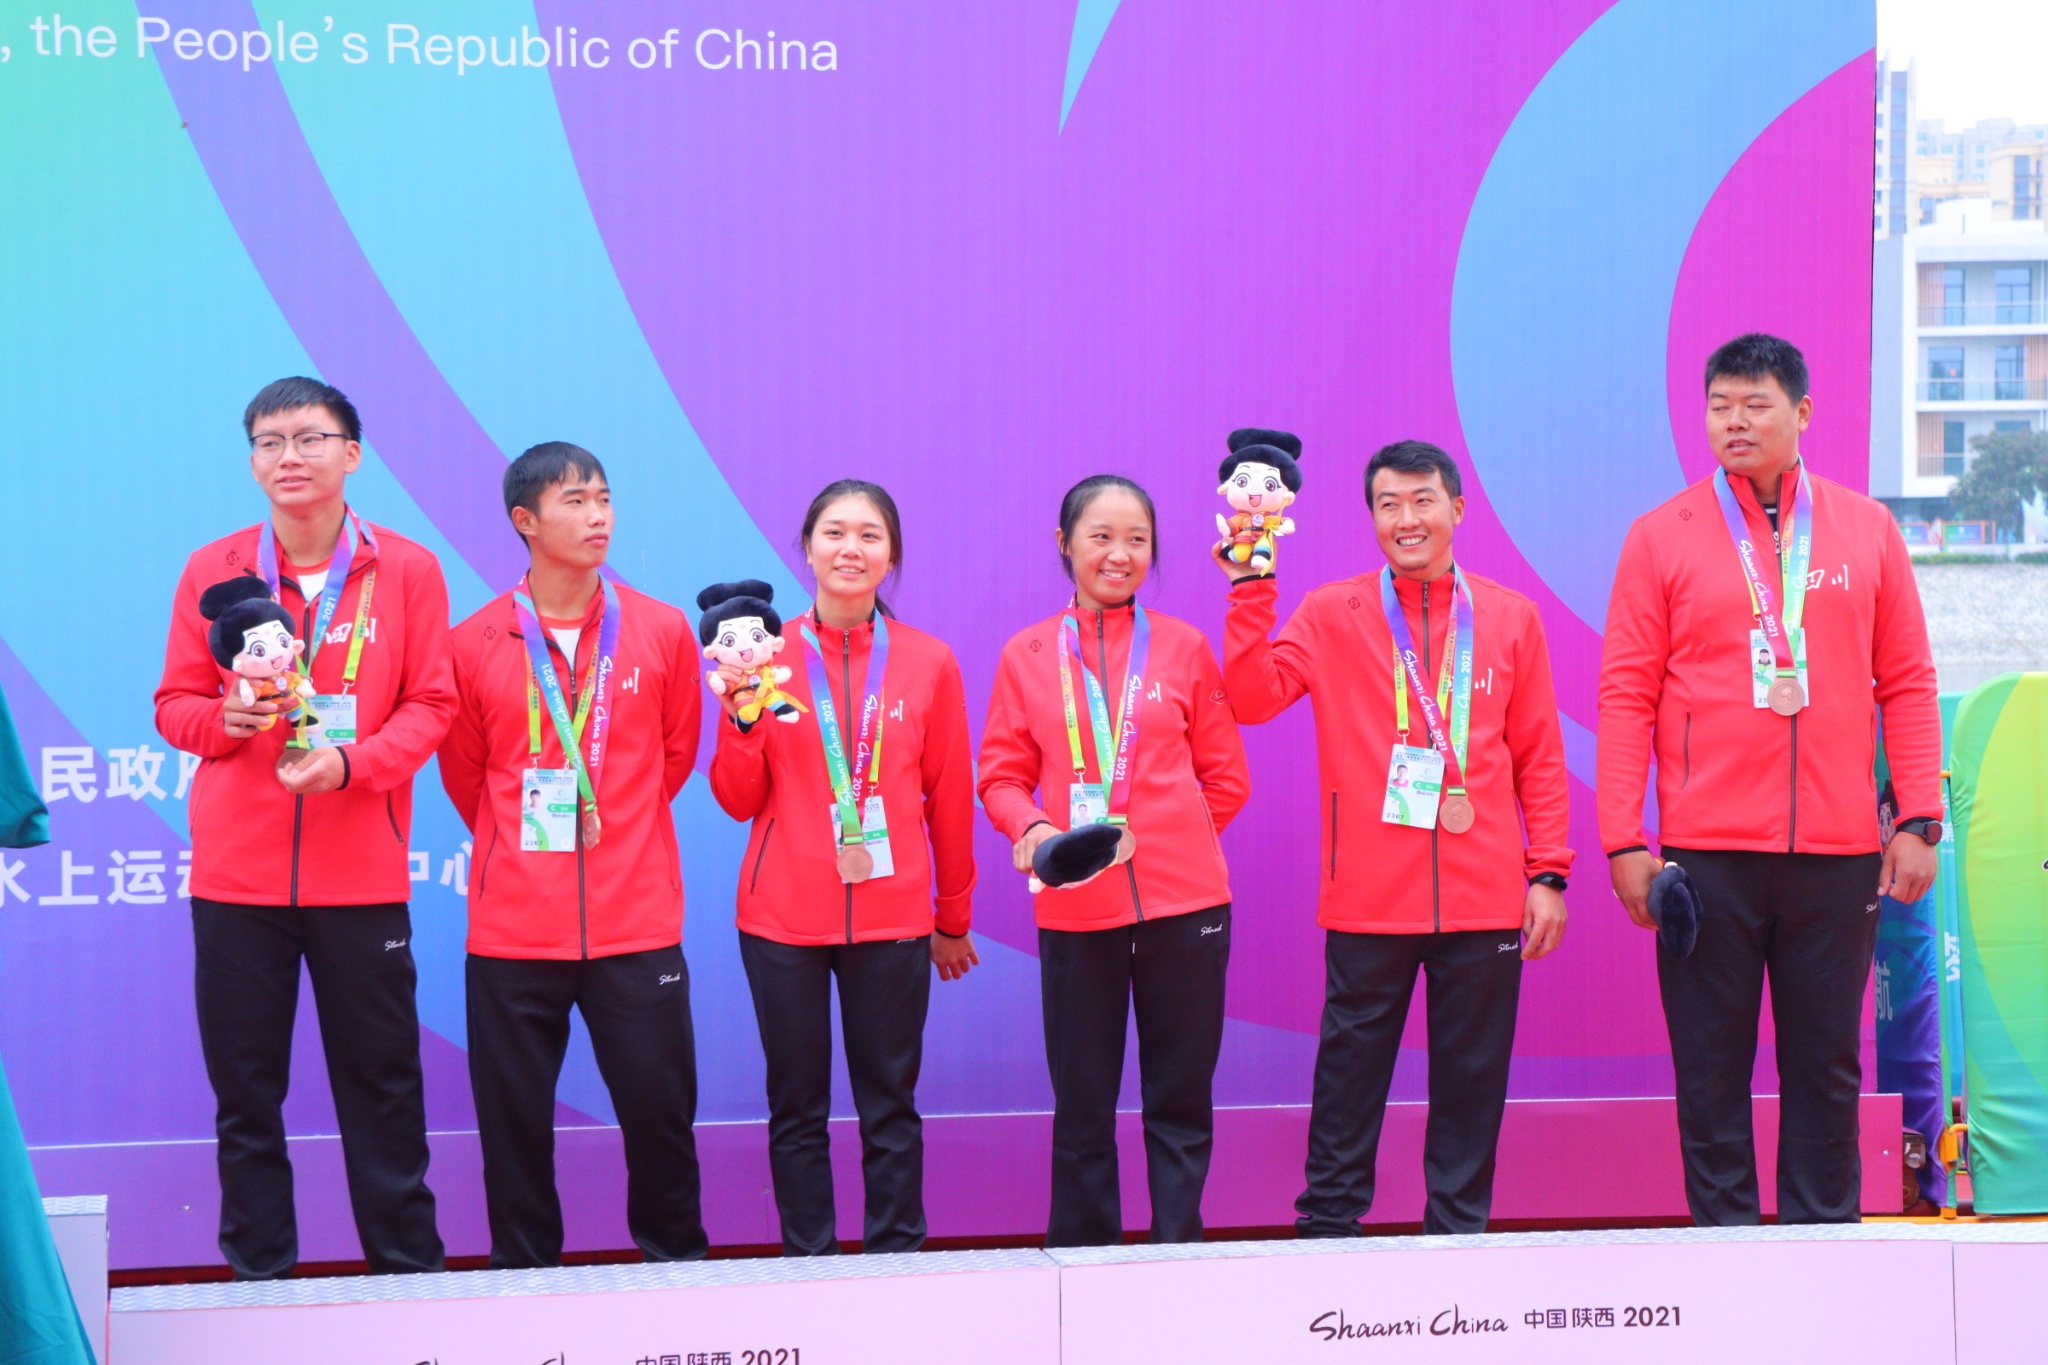 内江管理处员工参加中国第十一届残疾人运动会暨第八届特殊奥林匹克运动会并获得荣誉